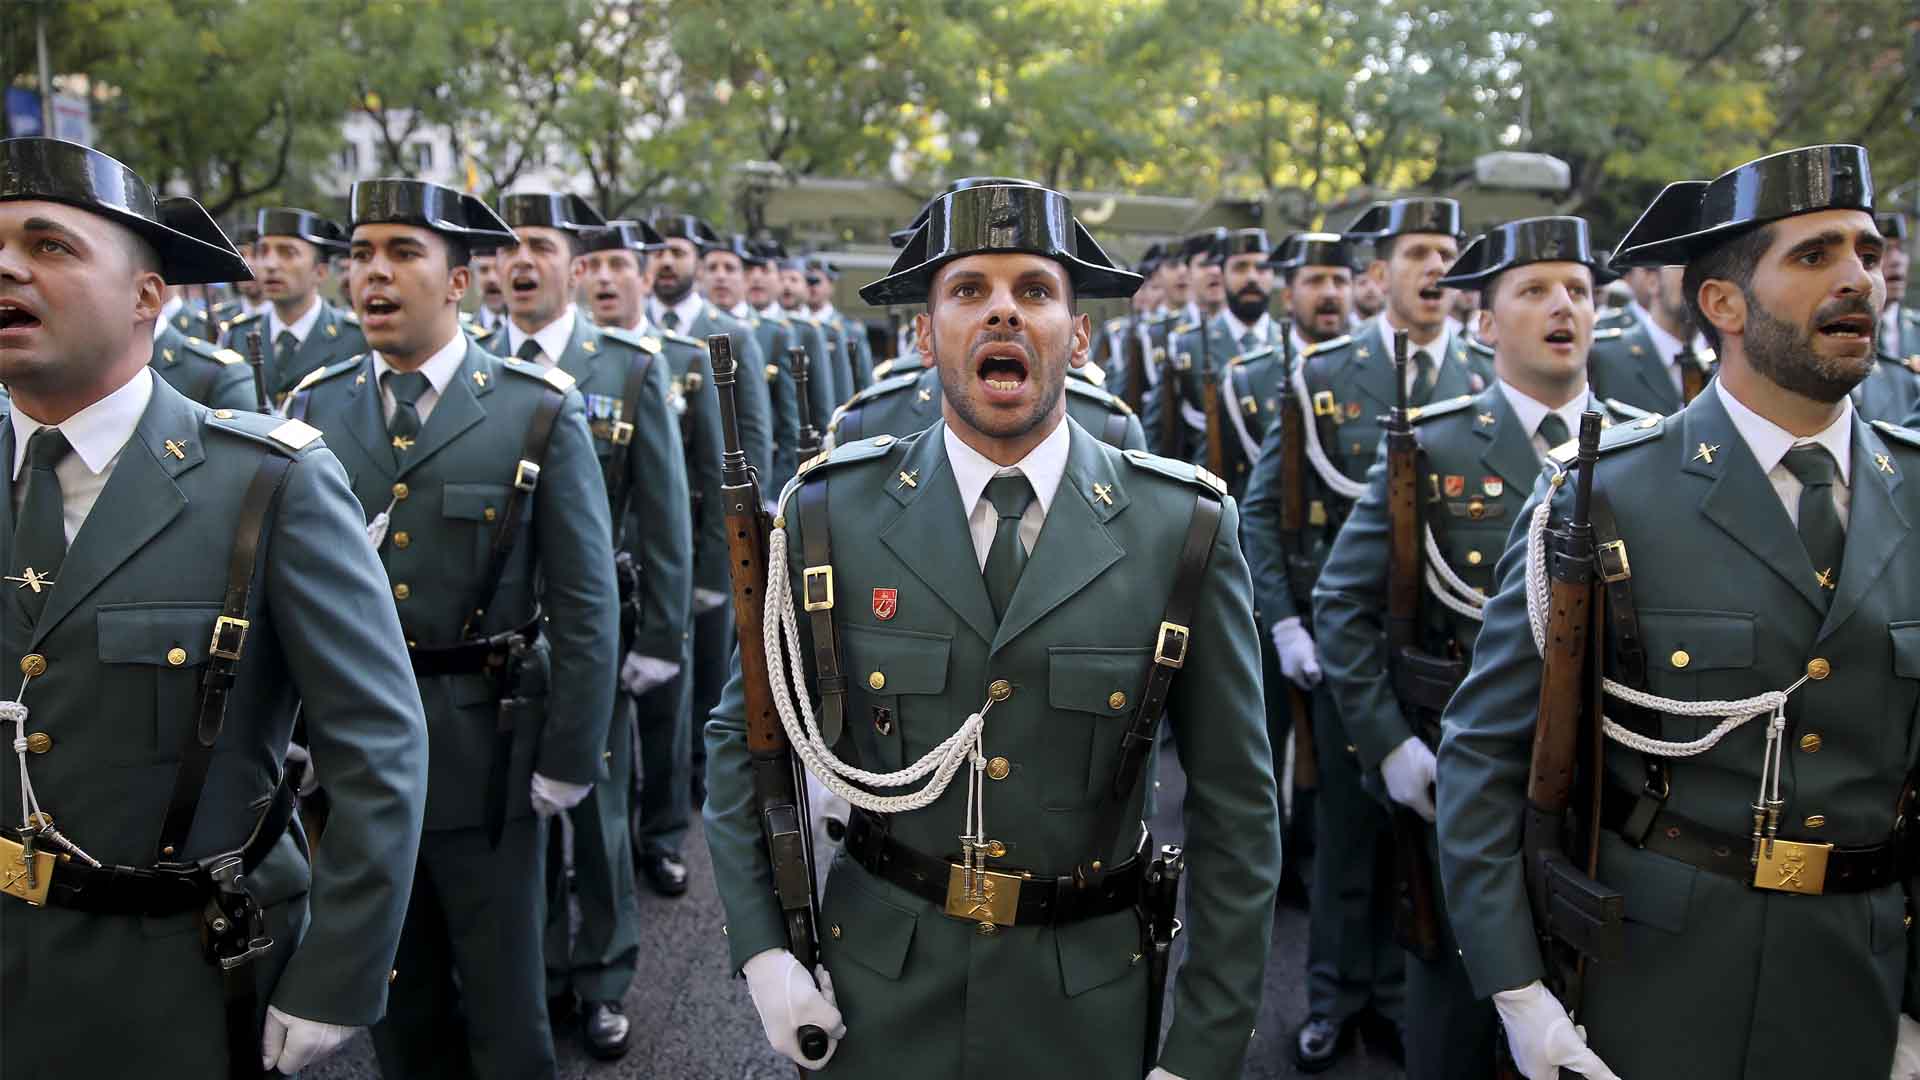 Guardia Civil, más de 170 años de servicio a España: “El honor es mi divisa”